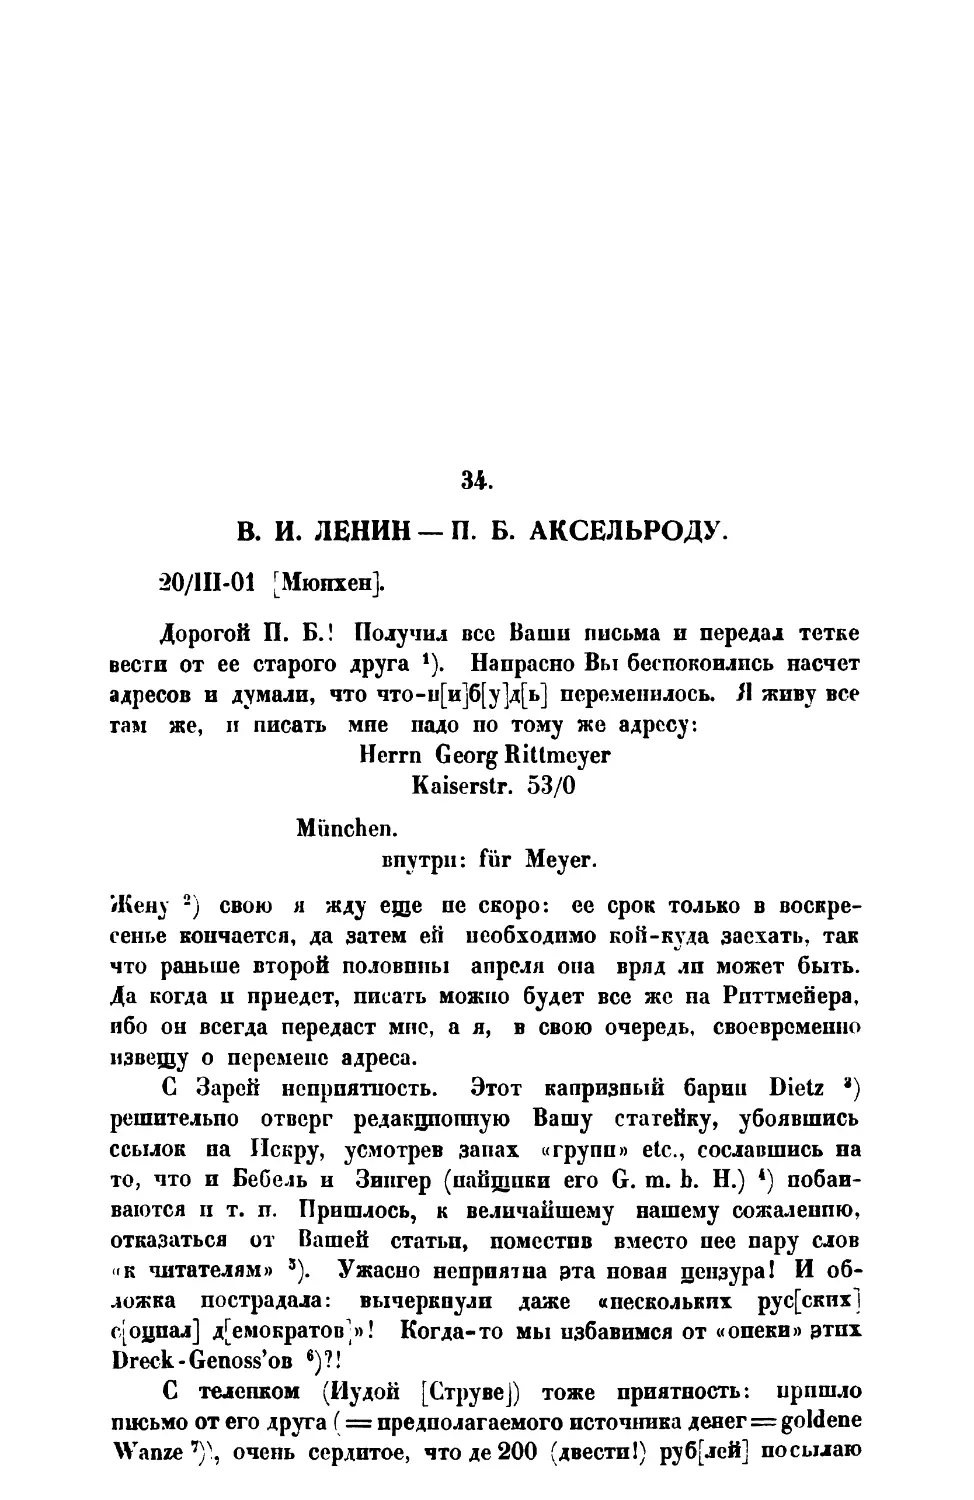 34. В. И. Ленин. — Письмо П. Б. Аксельроду от 20 III 1901 г.